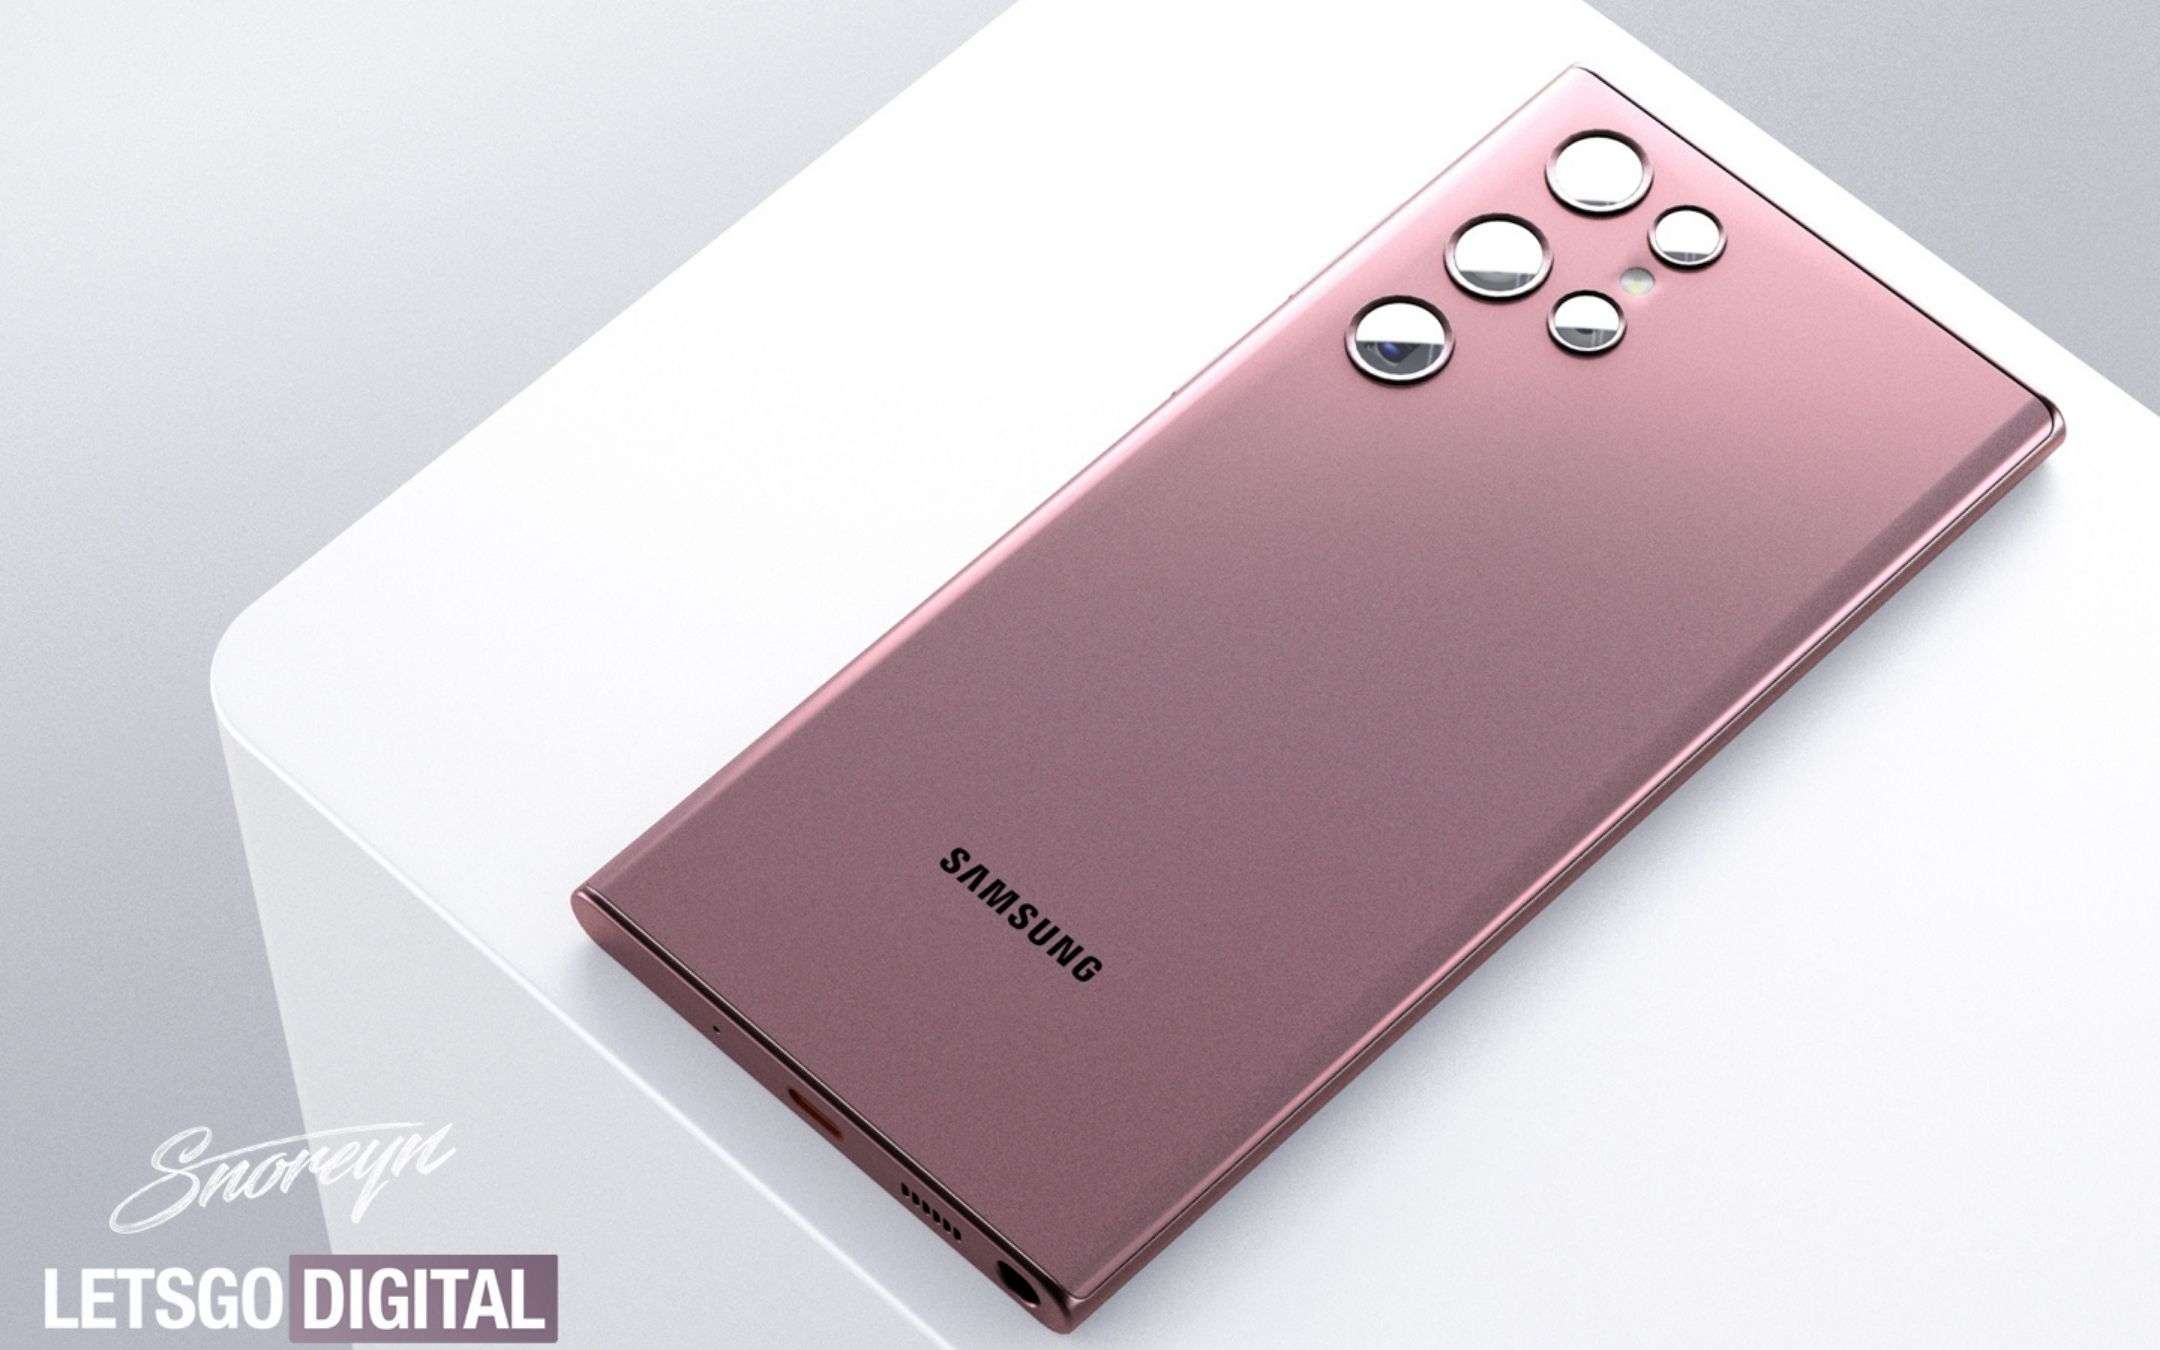 Samsung Galaxy S22 Ultra sembra proprio un Galaxy Note!